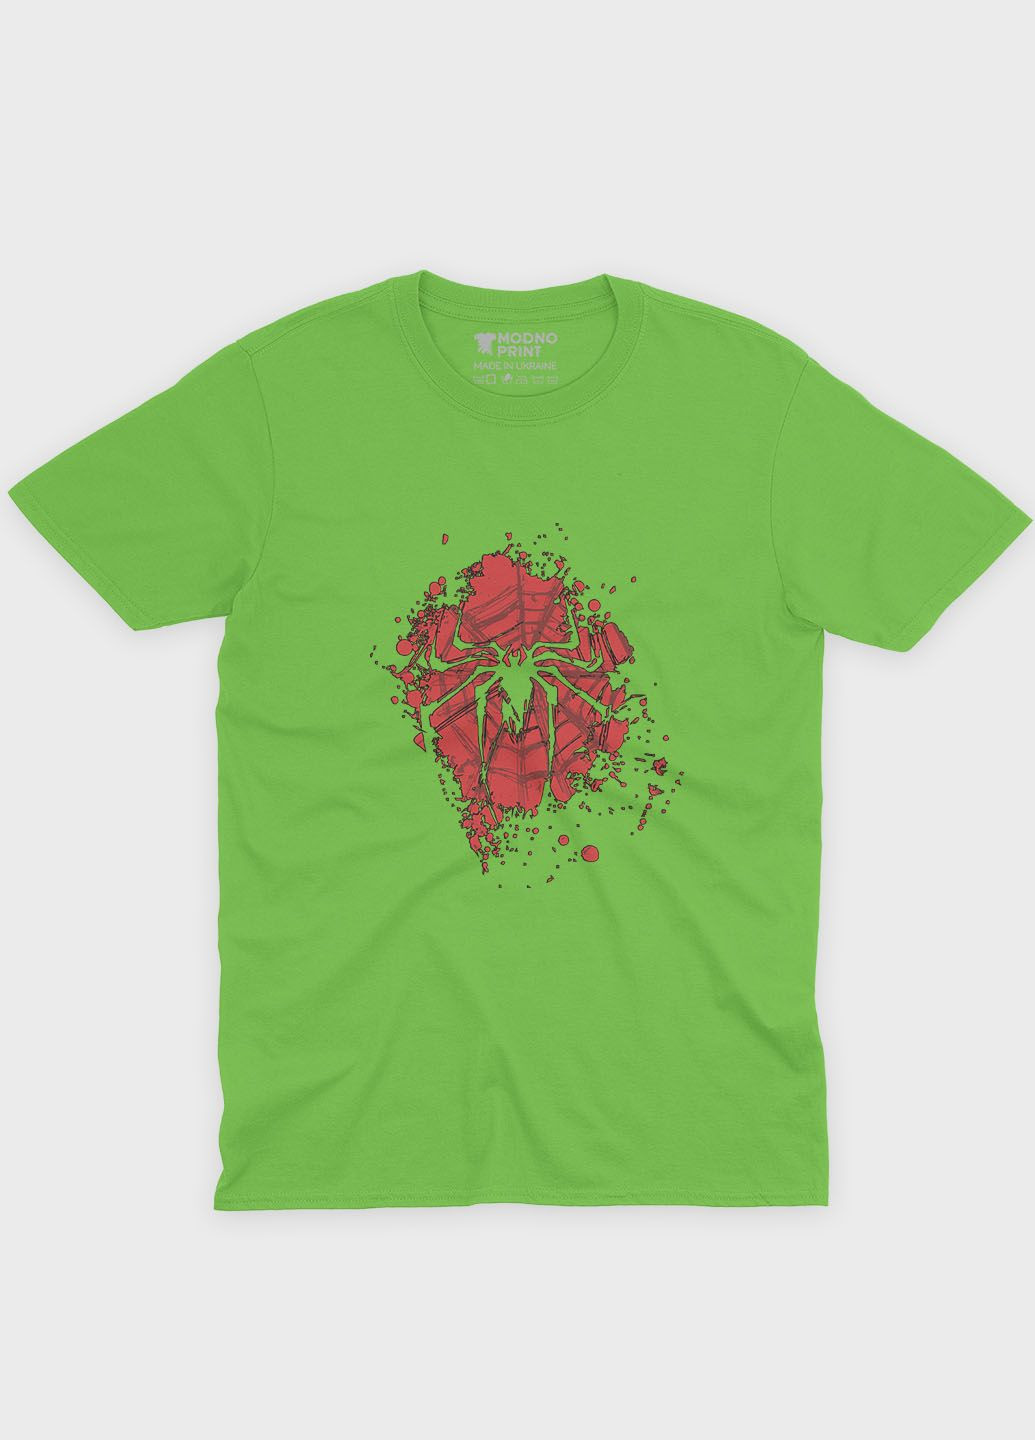 Салатова демісезонна футболка для хлопчика з принтом супергероя - людина-павук (ts001-1-kiw-006-014-084-b) Modno